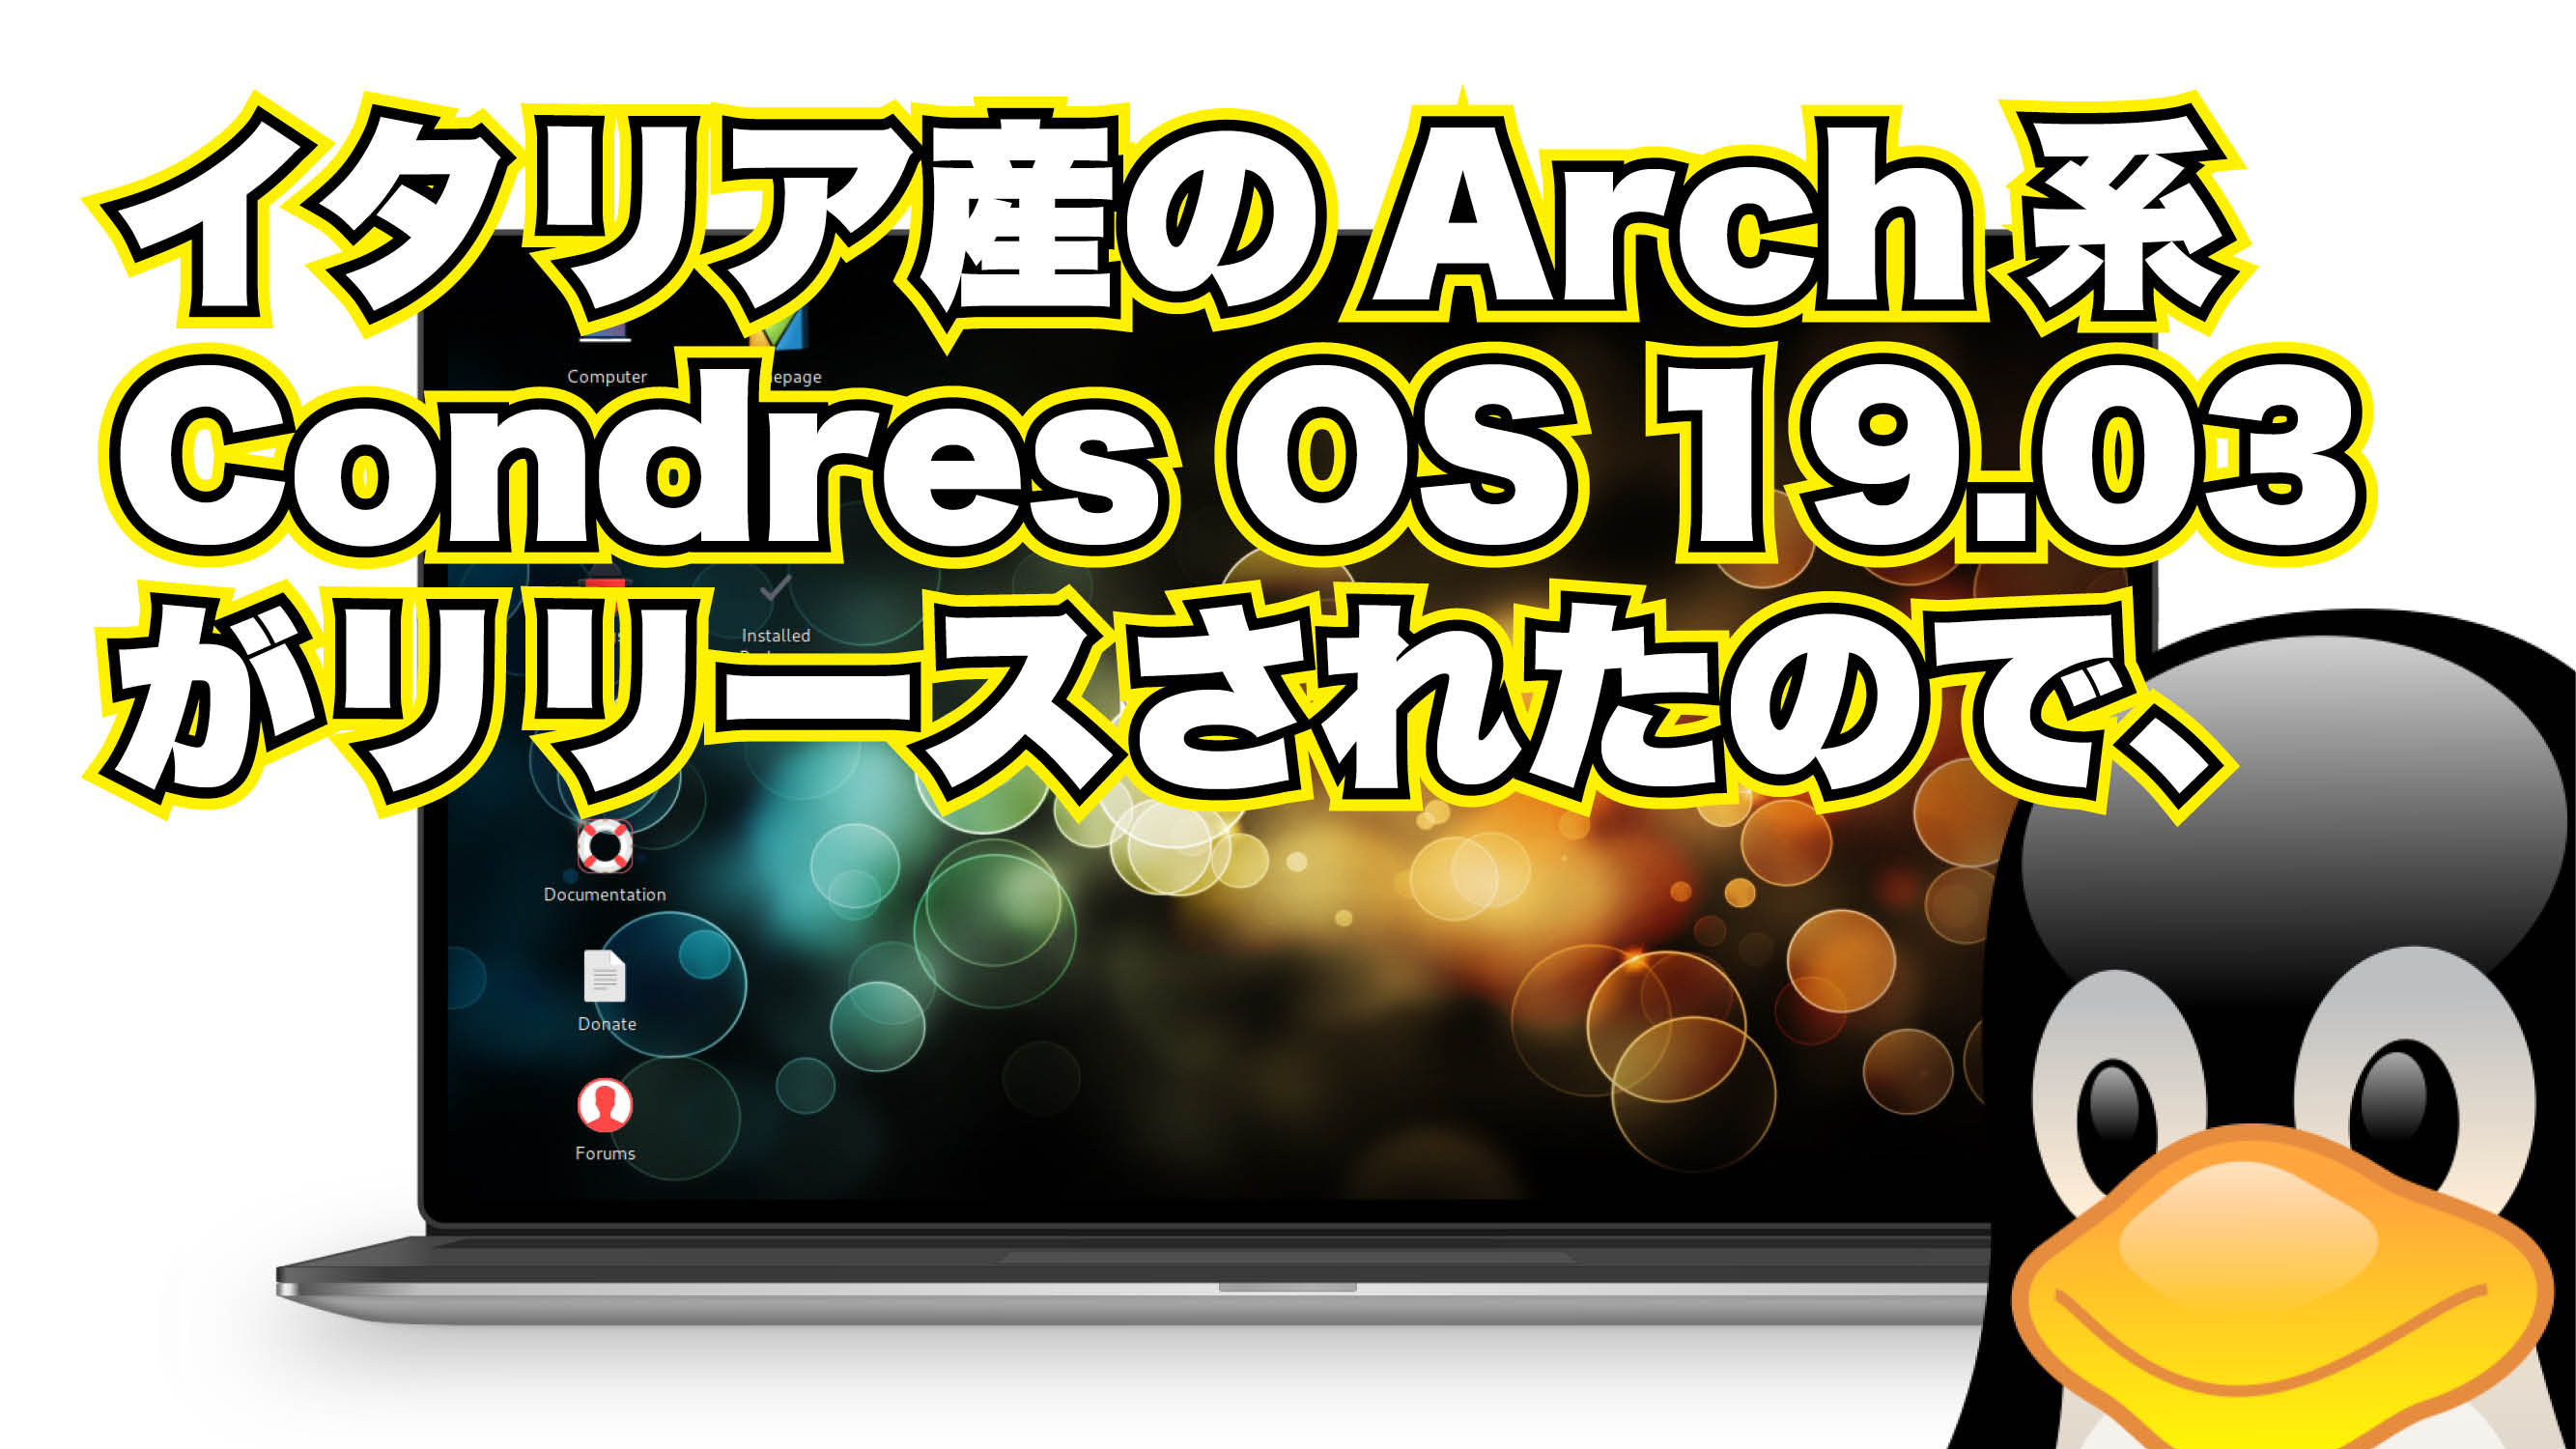 イタリア生まれの Arch 系 Condres OS 19.03 がリリースされたので、